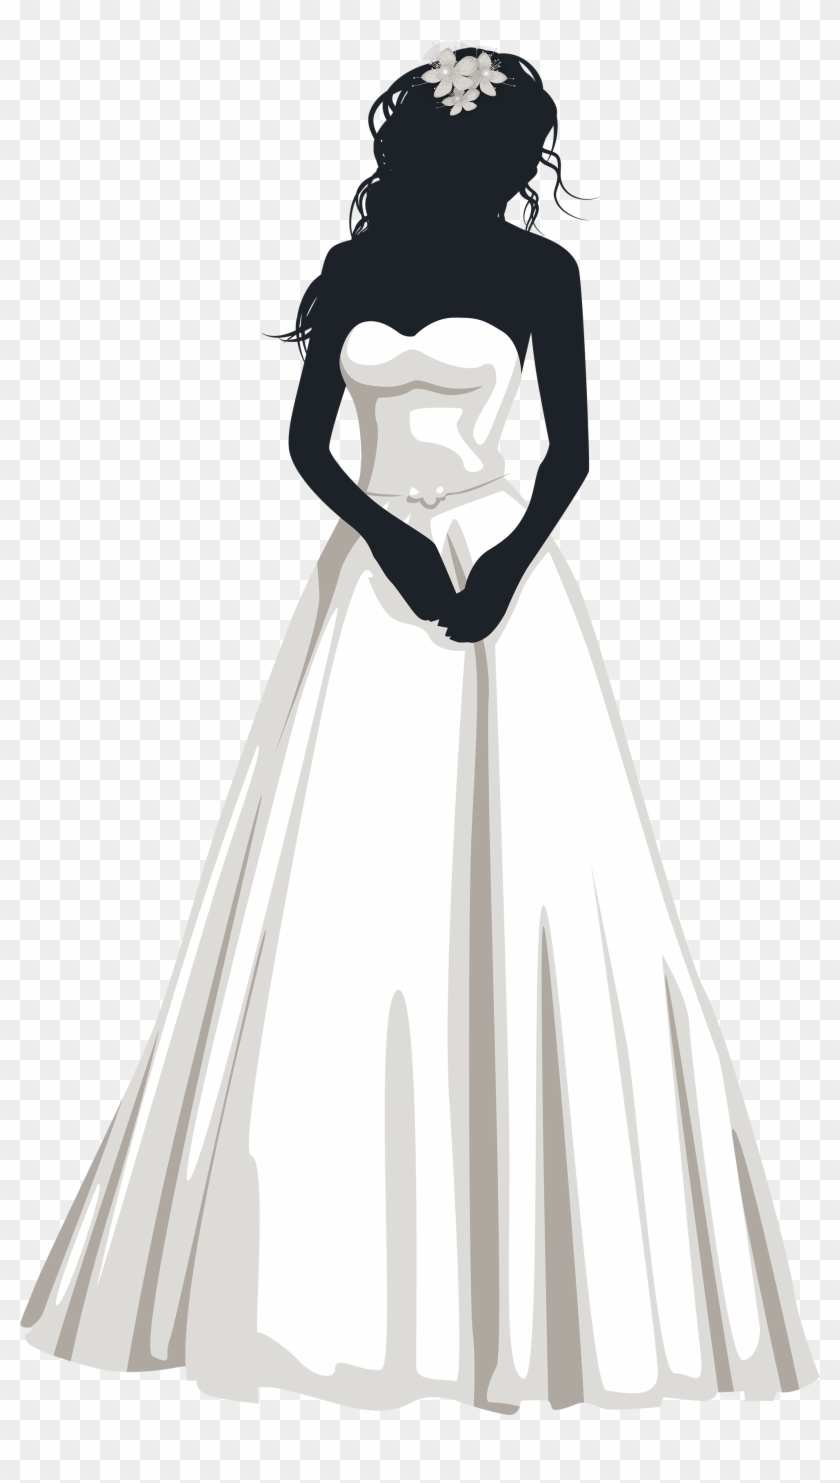 Bride Clip Art - Bride Png #533014